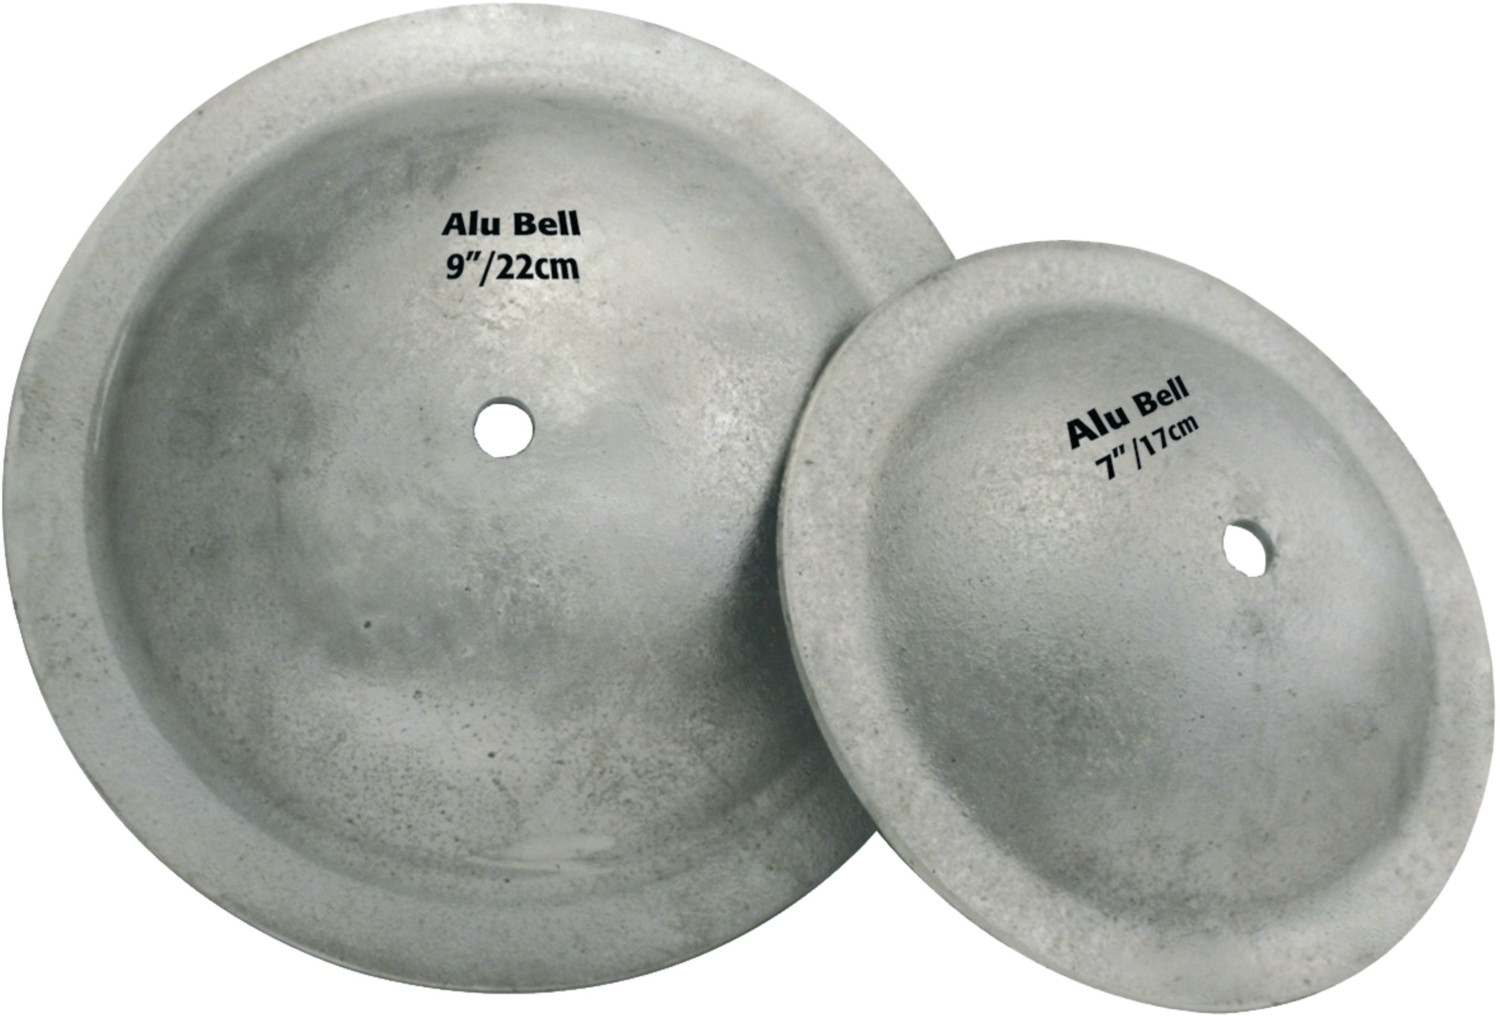 Photos - Cymbal Sabian Aluminum Bell 